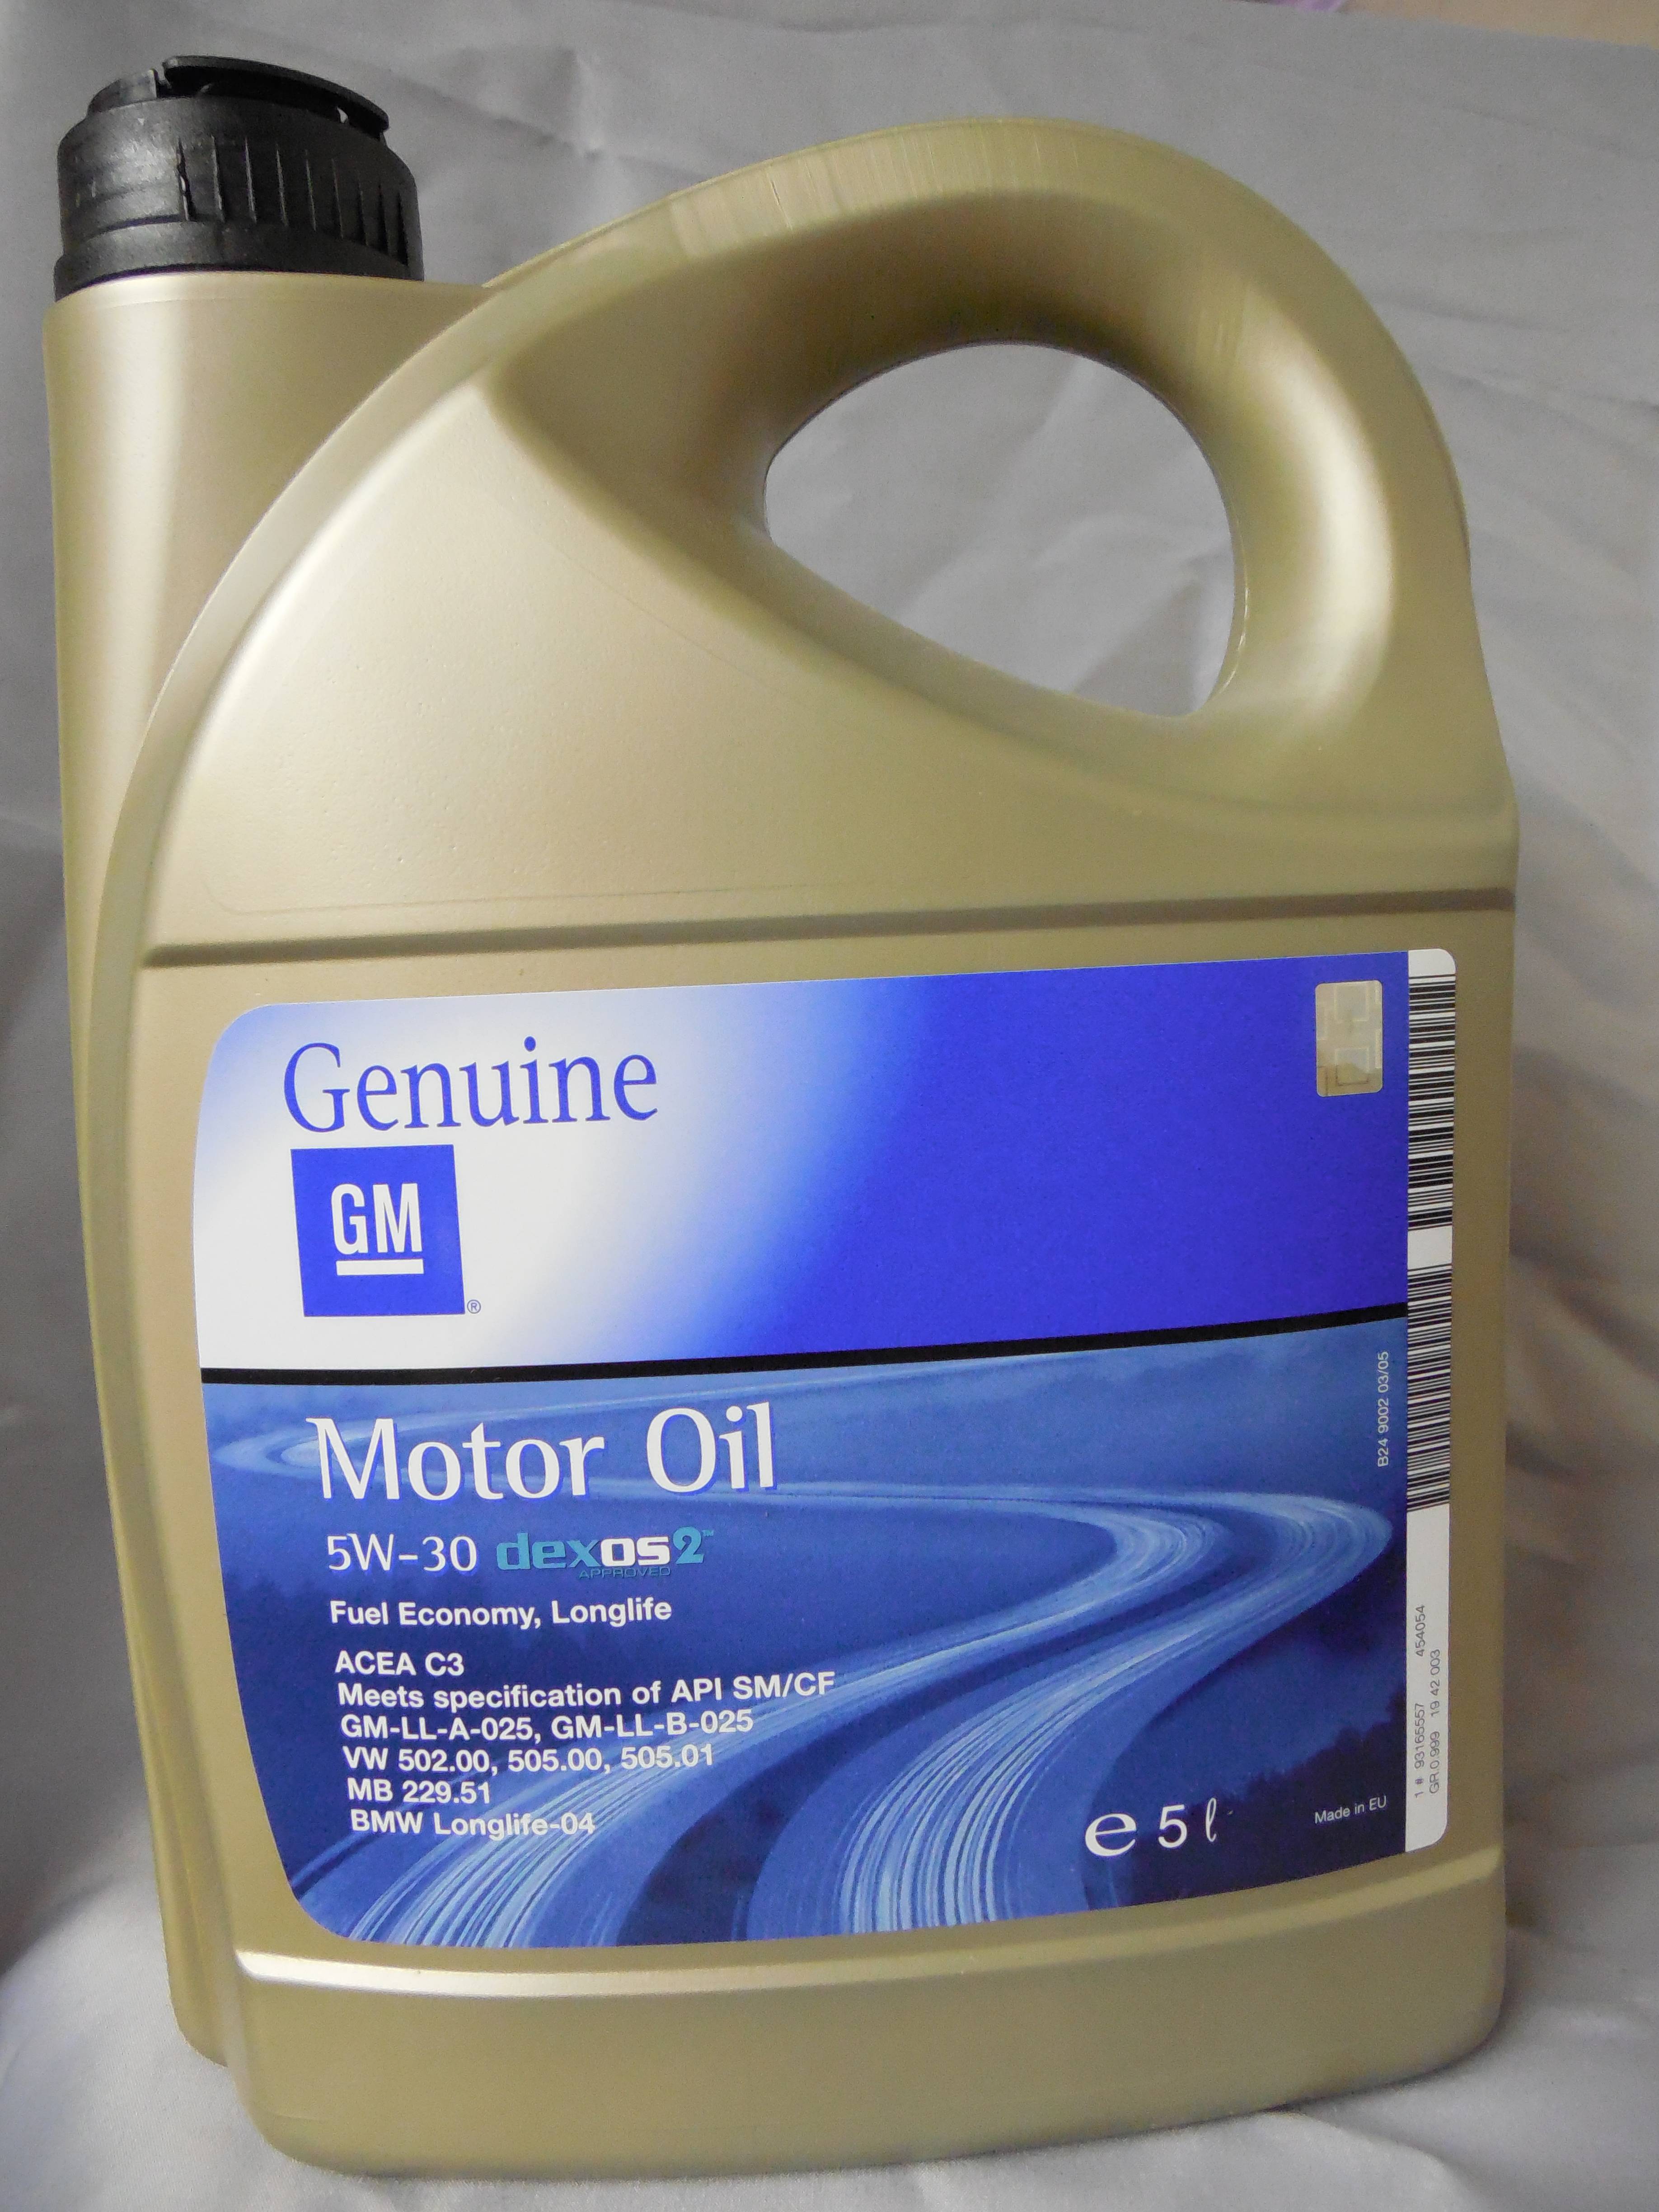 Моторное масло gm 5w30 dexos2: как отличить подделку, характеристики